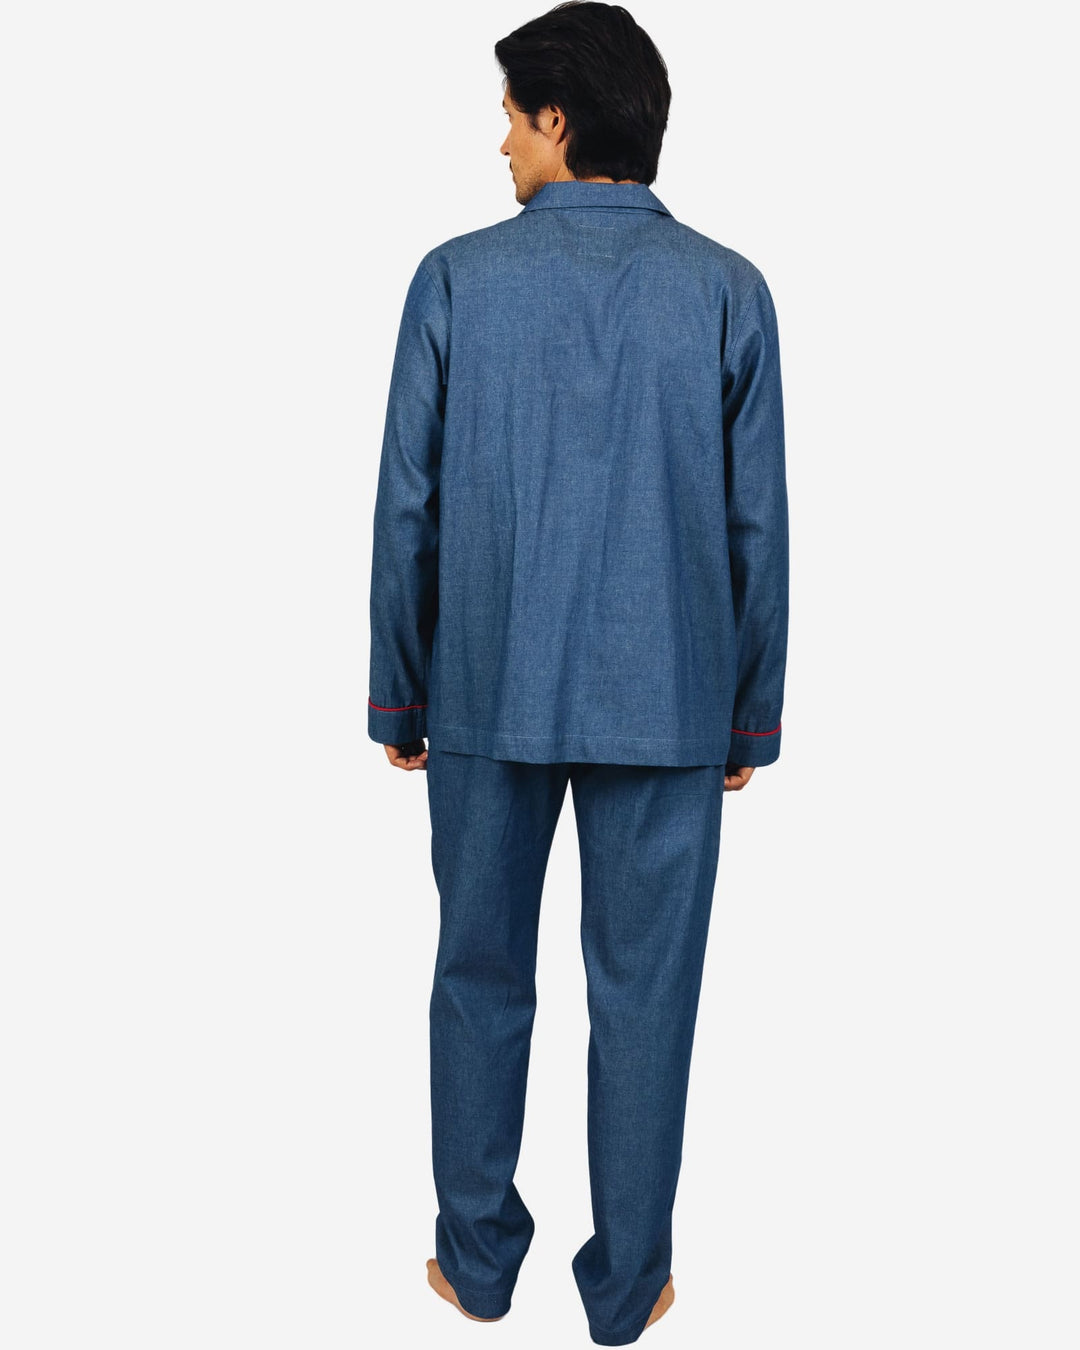 Mens pyjamas set - denim mid blue